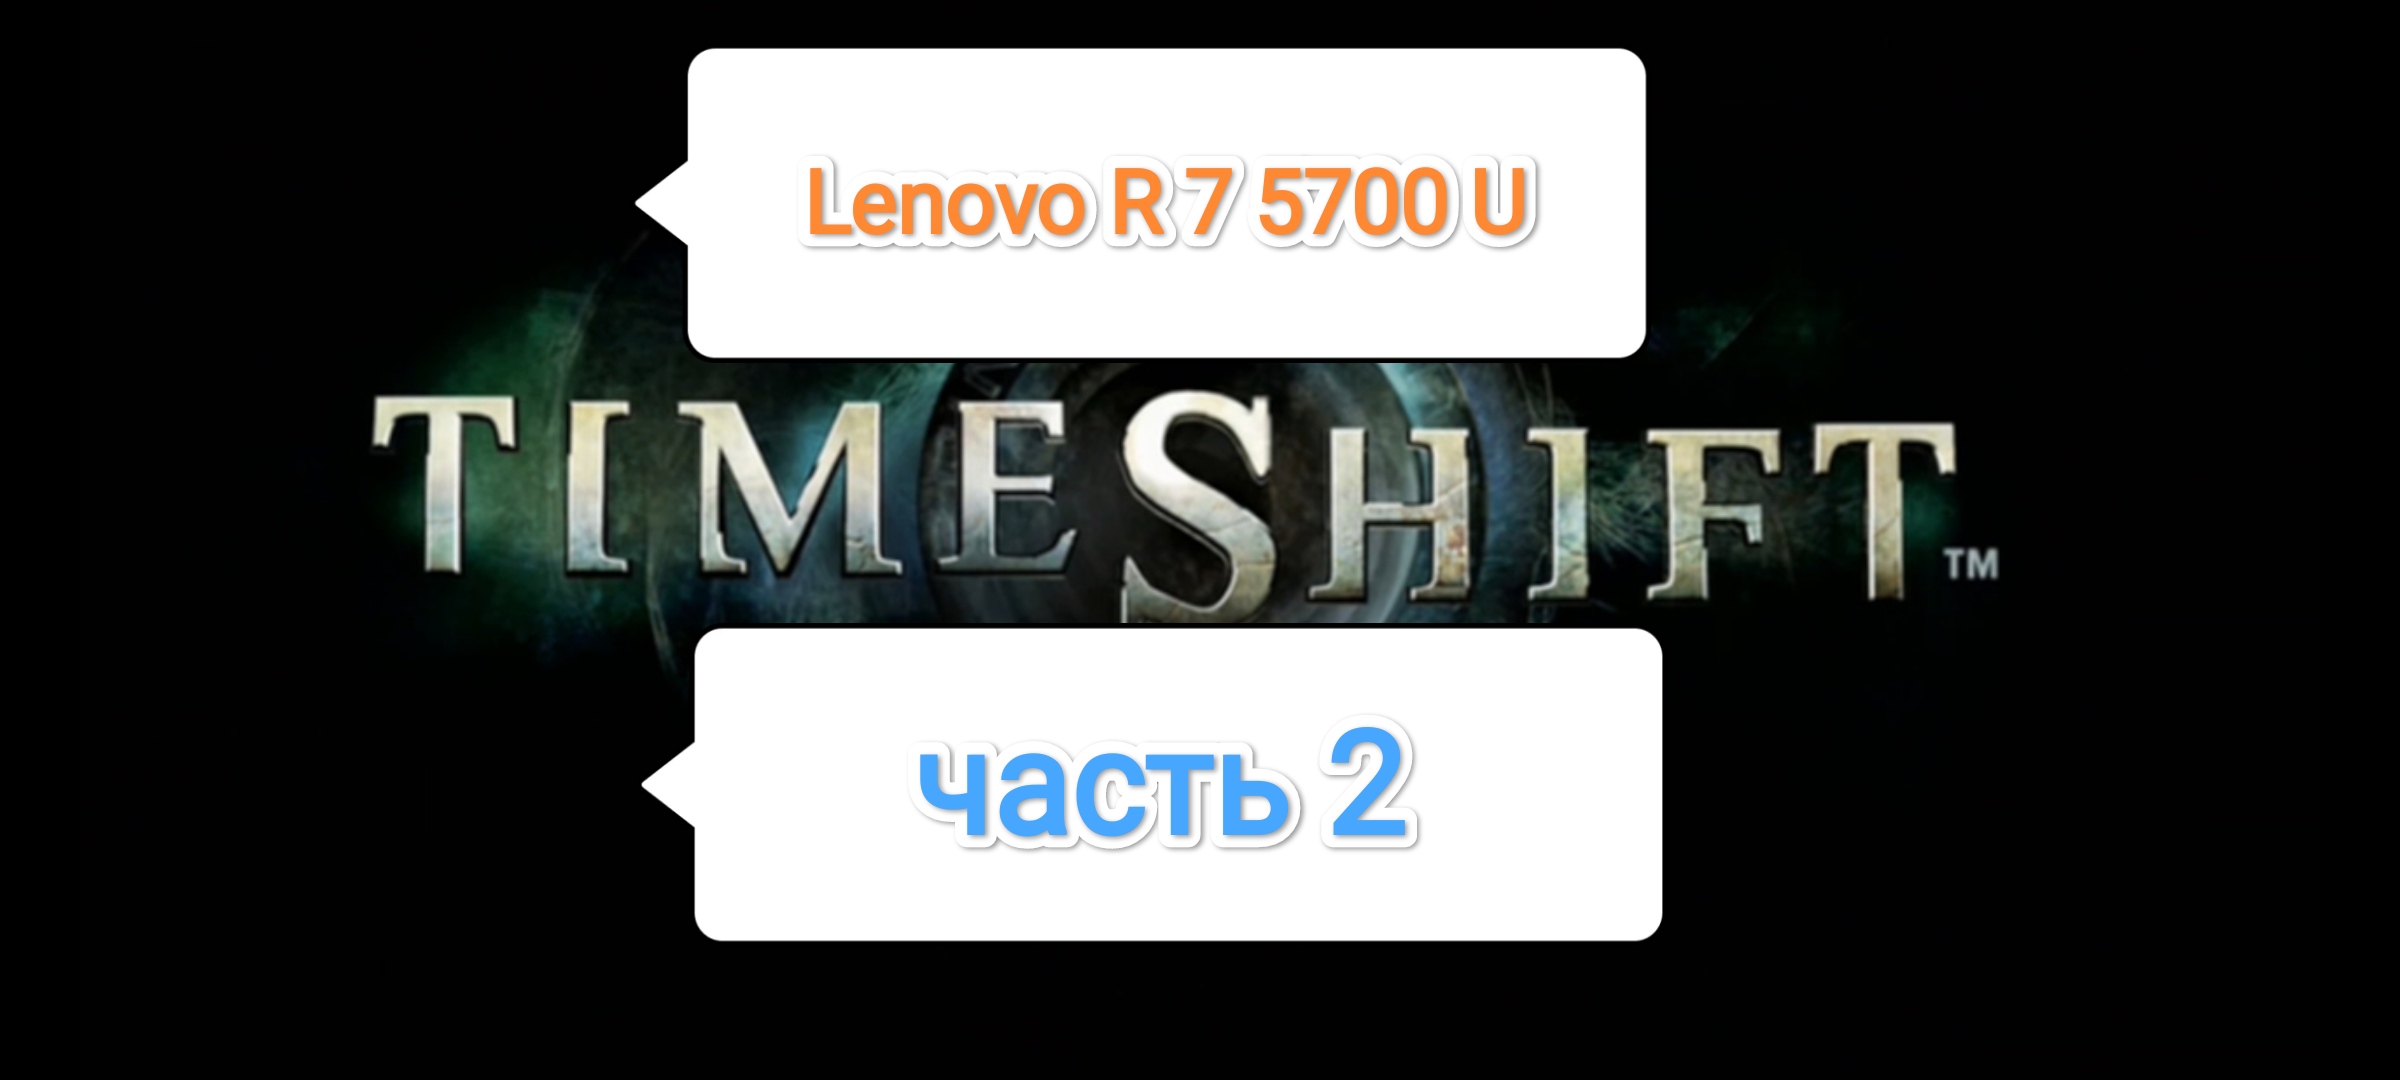 TimeShift v.1.02 - производительность игры на драйвере 23.5.2 (часть 2)